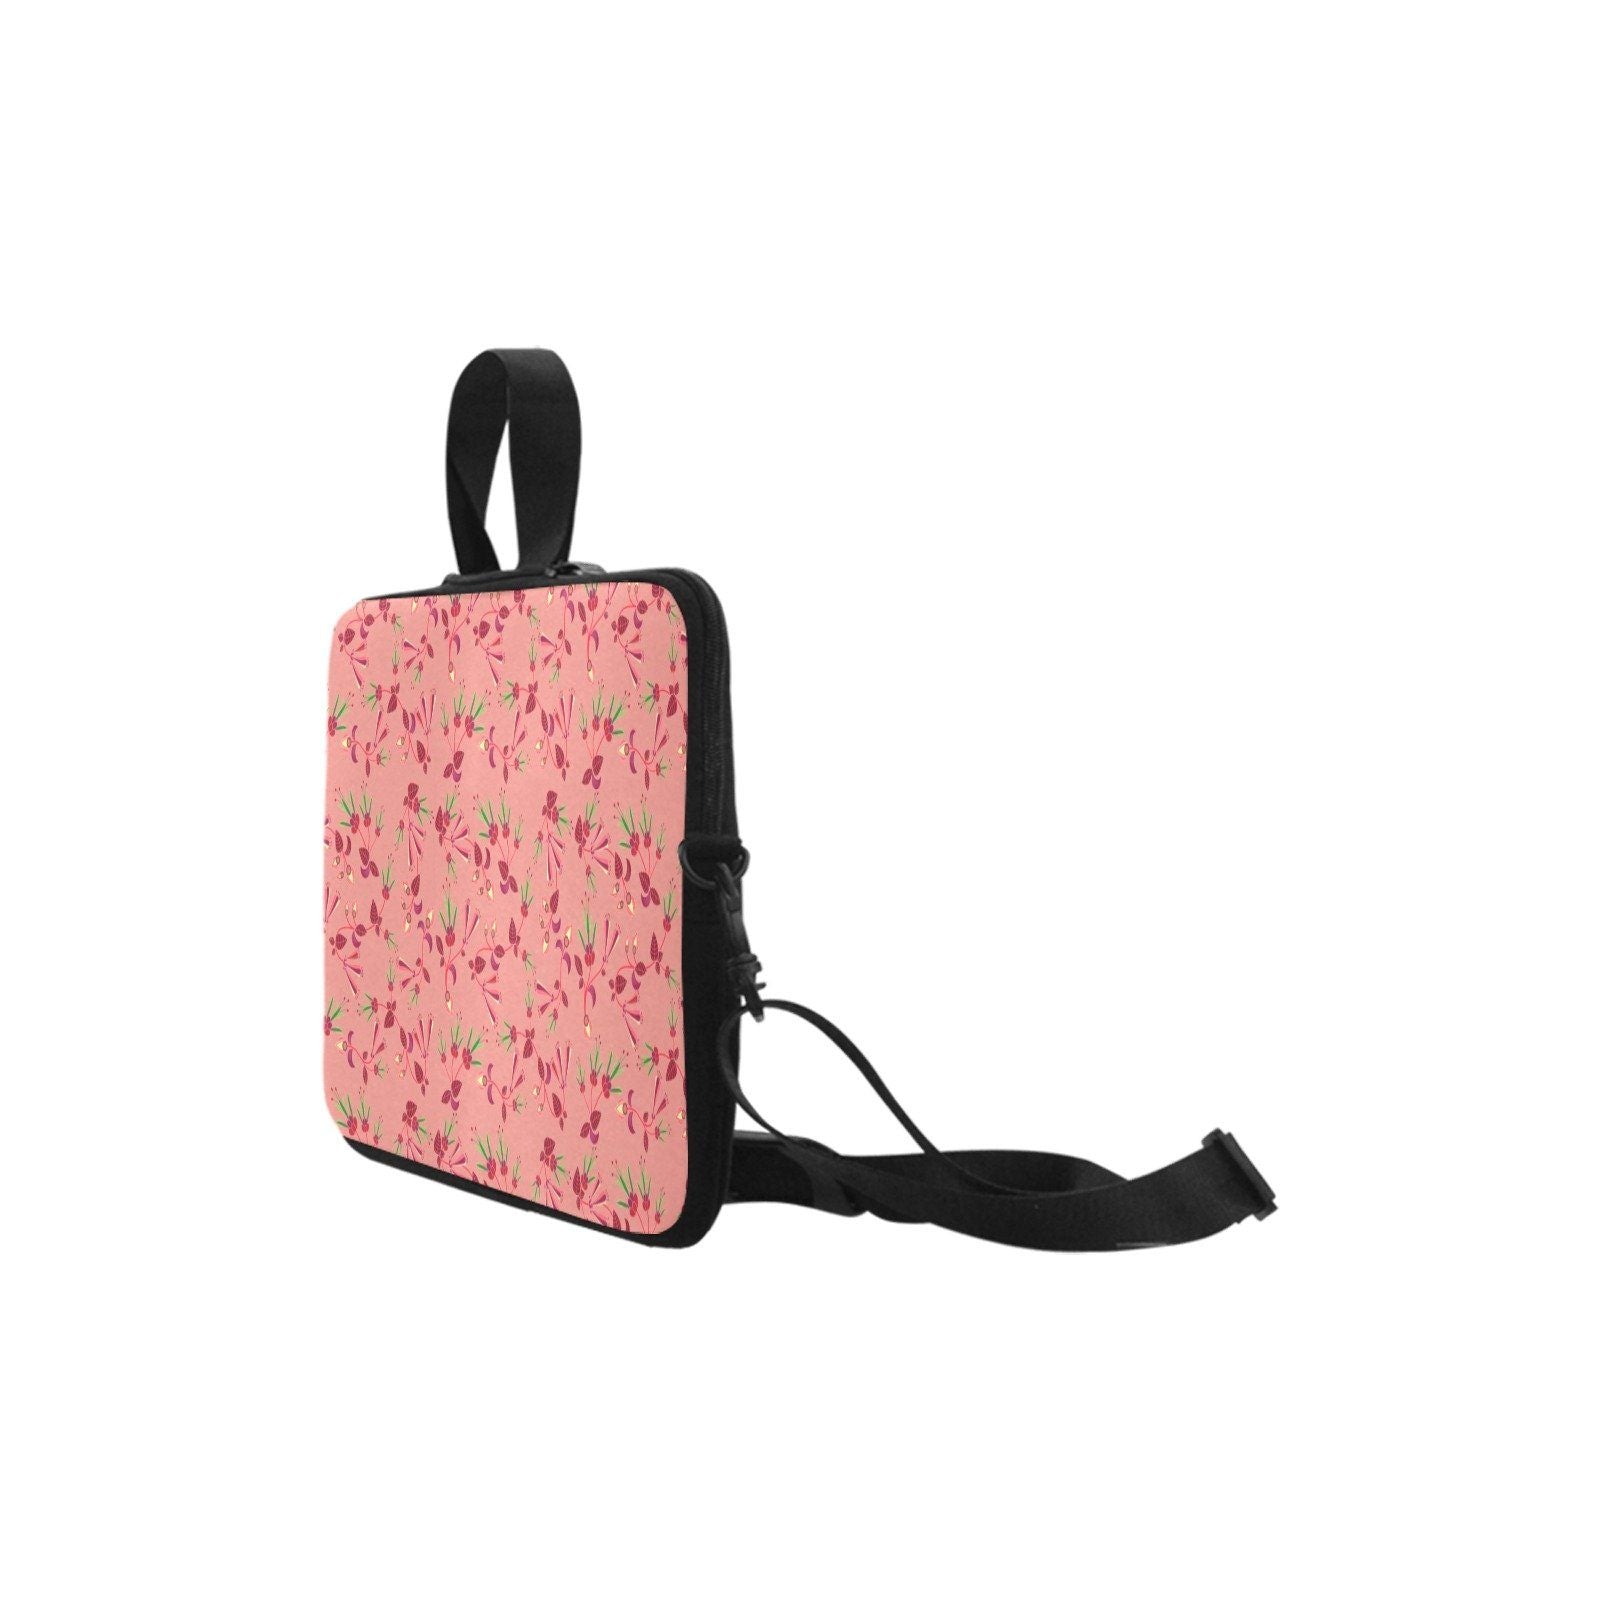 Swift Floral Peach Rouge Remix Laptop Handbags 15" Laptop Handbags 15" e-joyer 